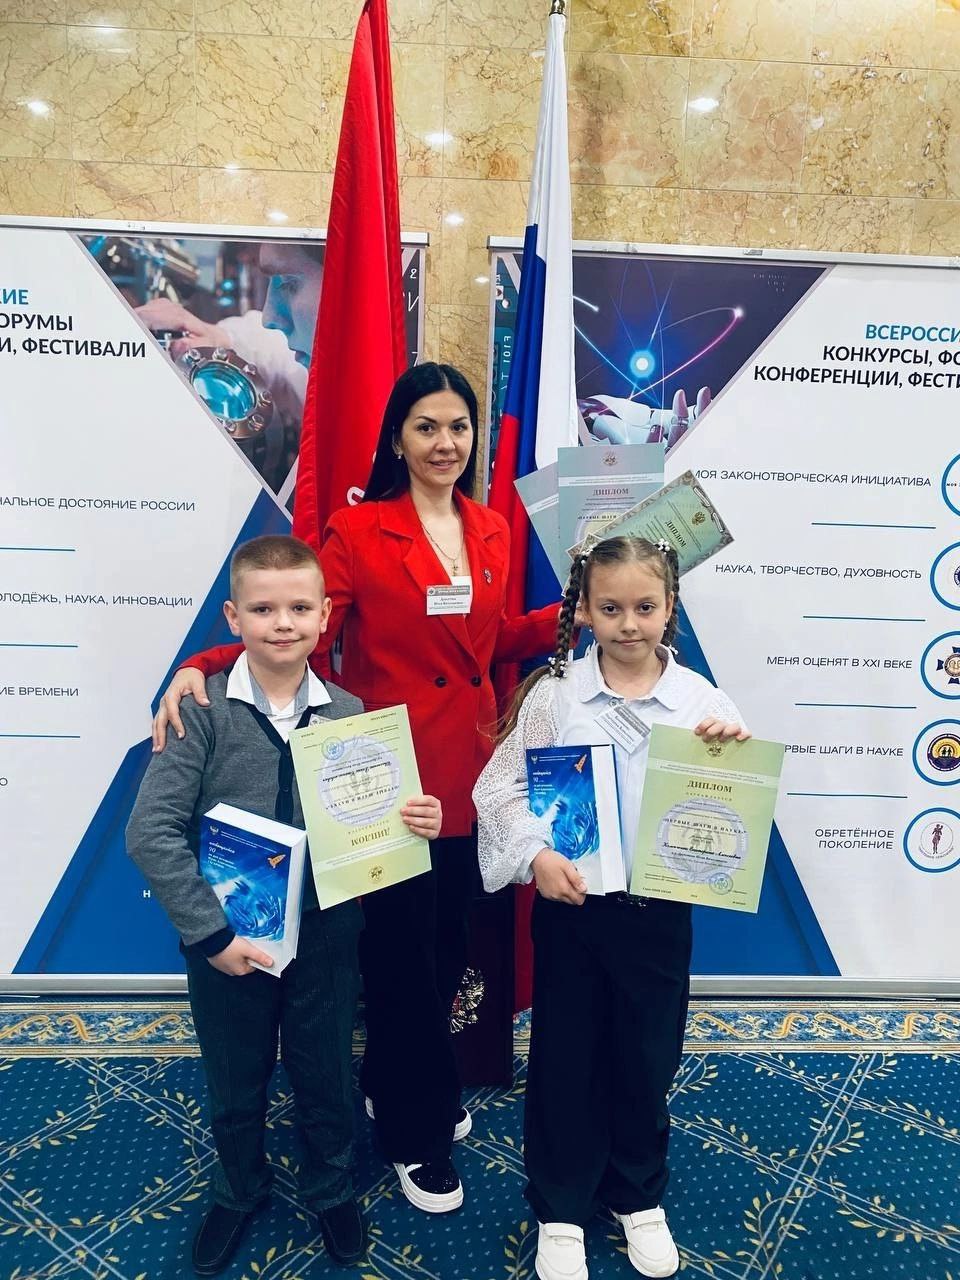 Наши юные учёные достойно представили свой район на XXXIII Всероссийском детском конкурсе научно-исследовательских работ «Первые шаги в науке»..